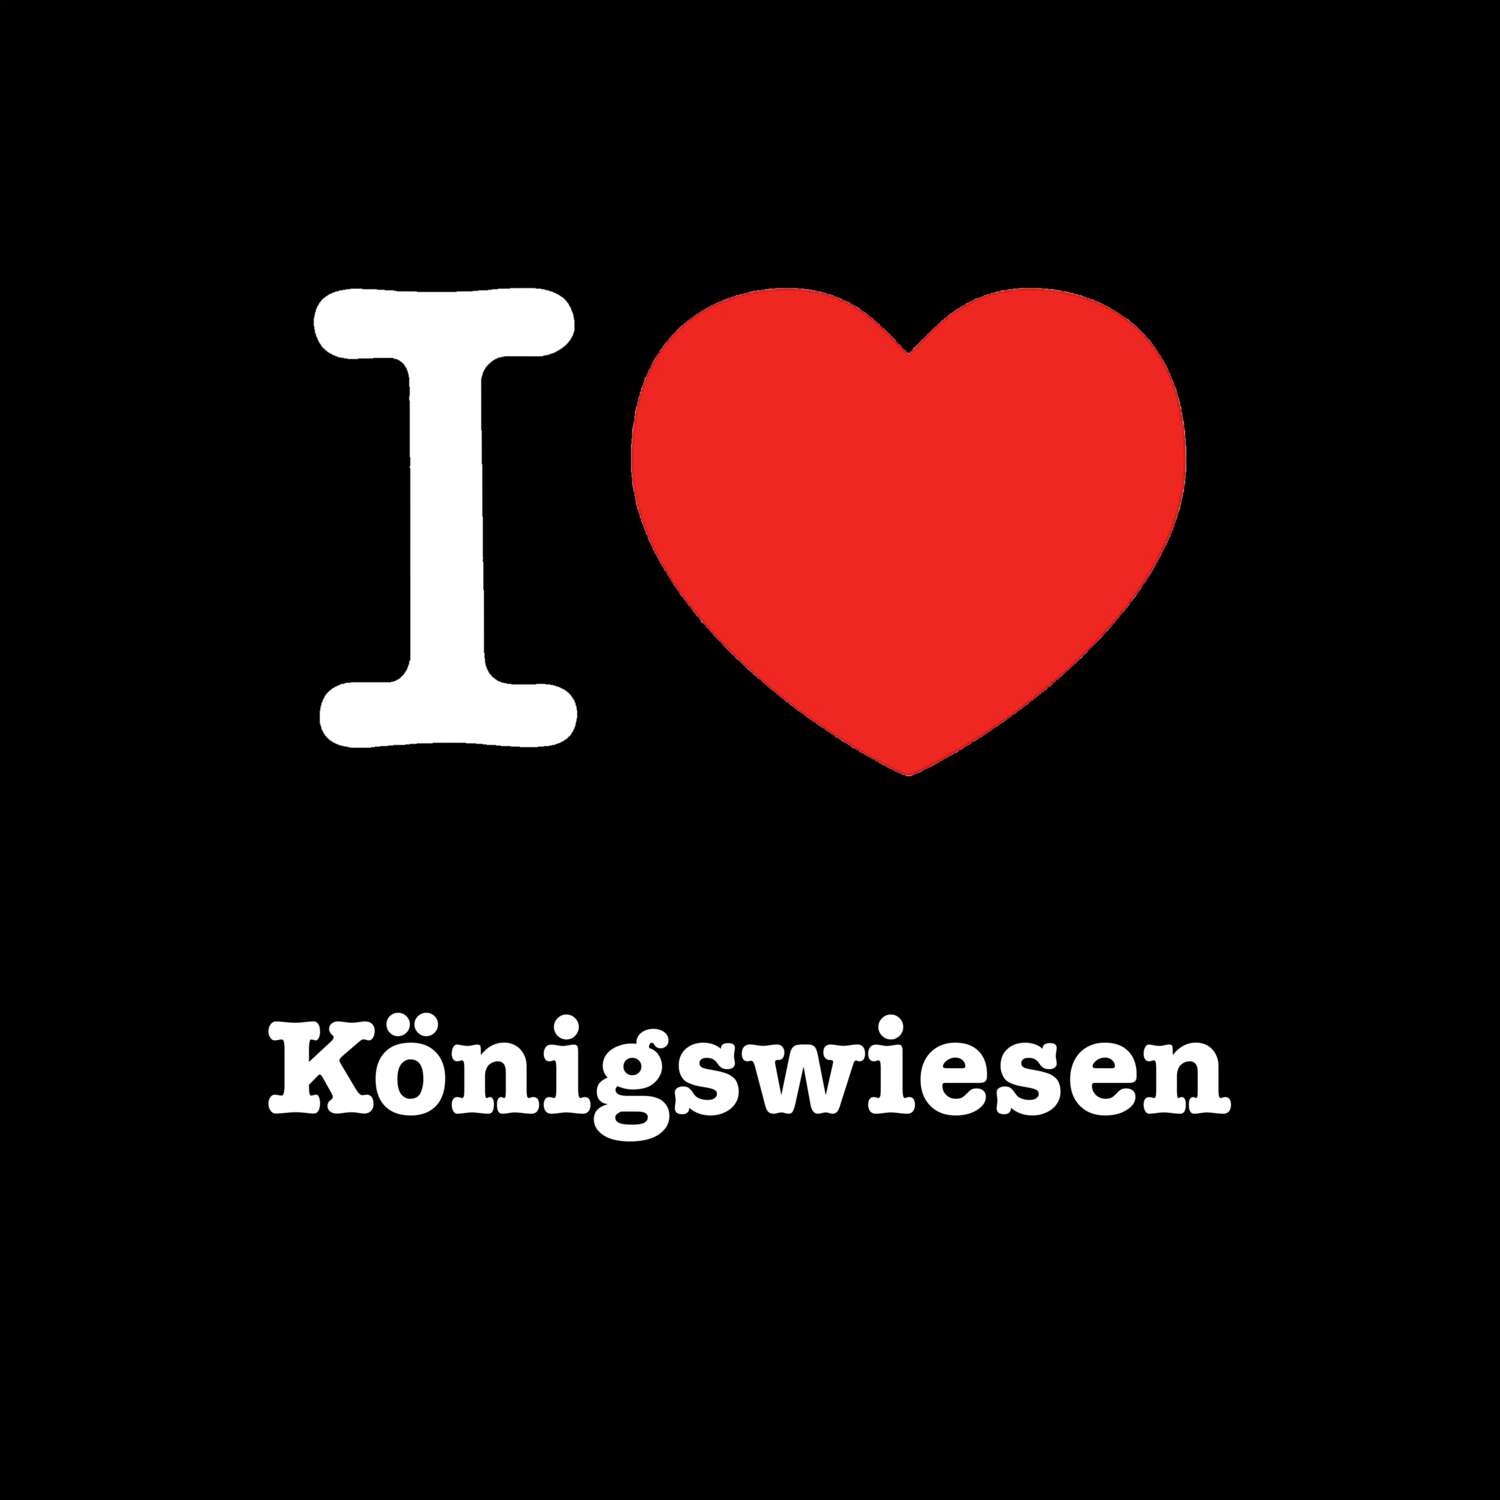 Königswiesen T-Shirt »I love«